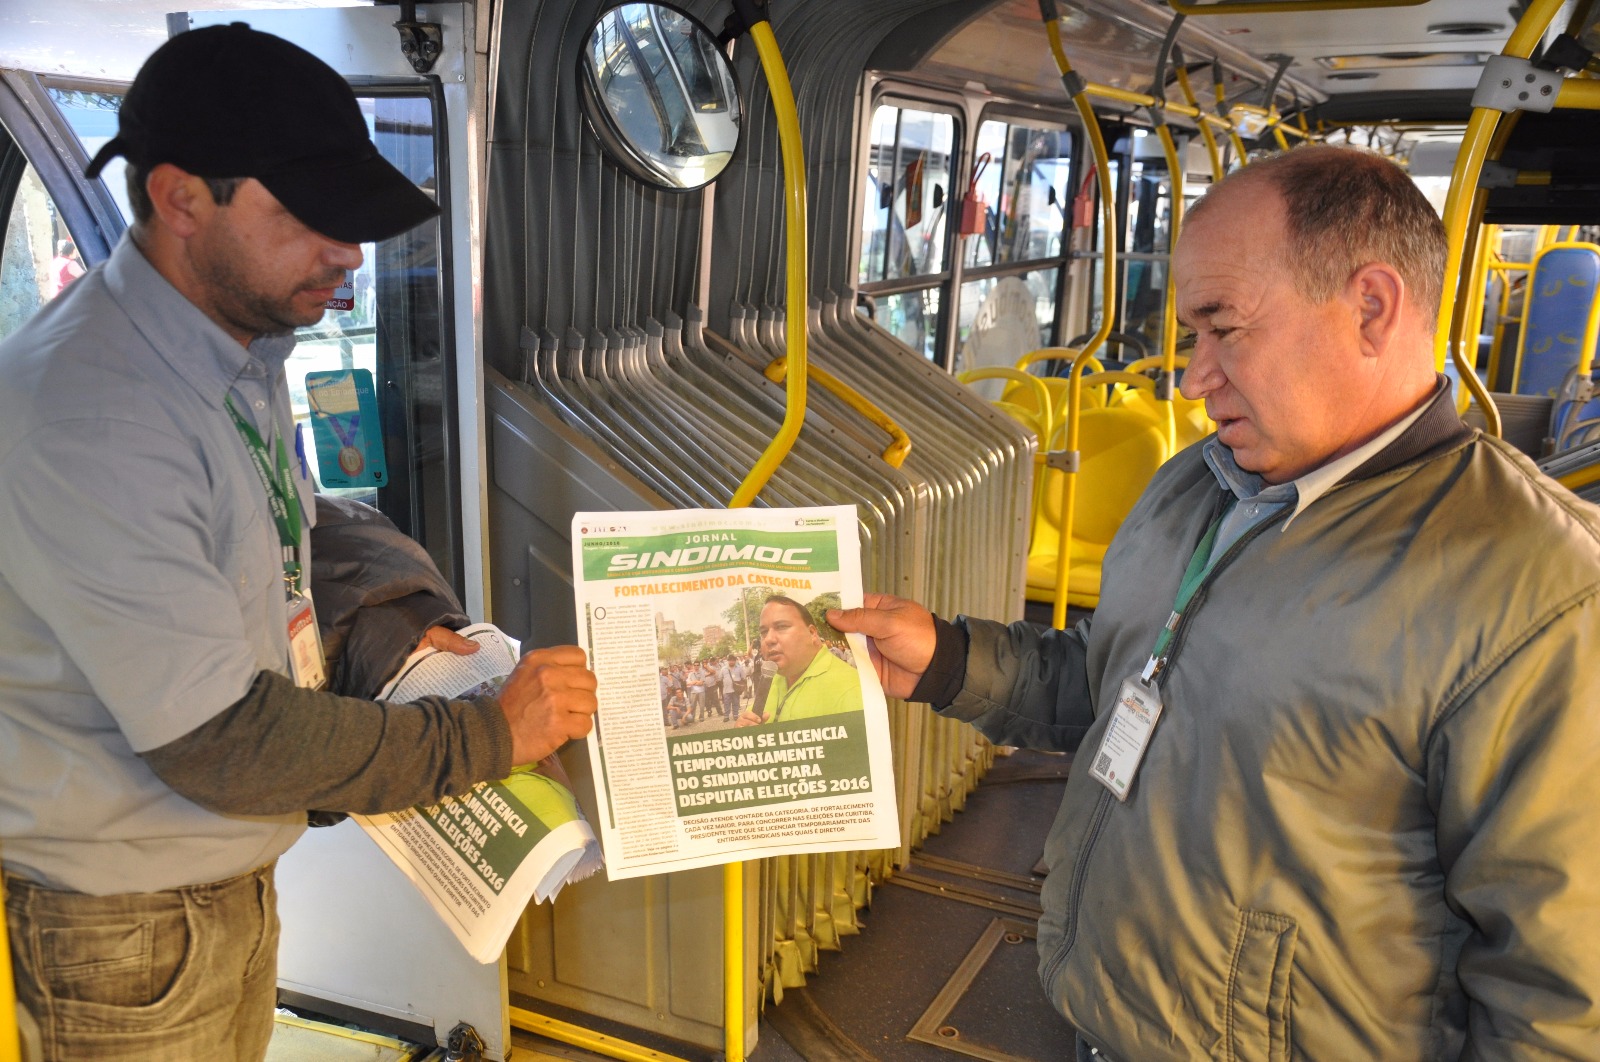 Trabalhadores recebem nova edição do jornal Sindimoc